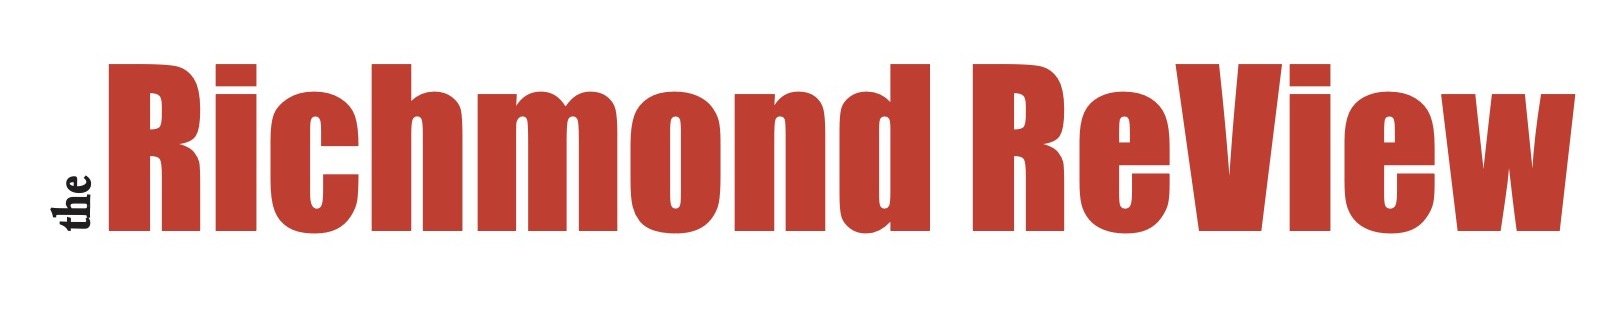 Richmond Review logo.jpg